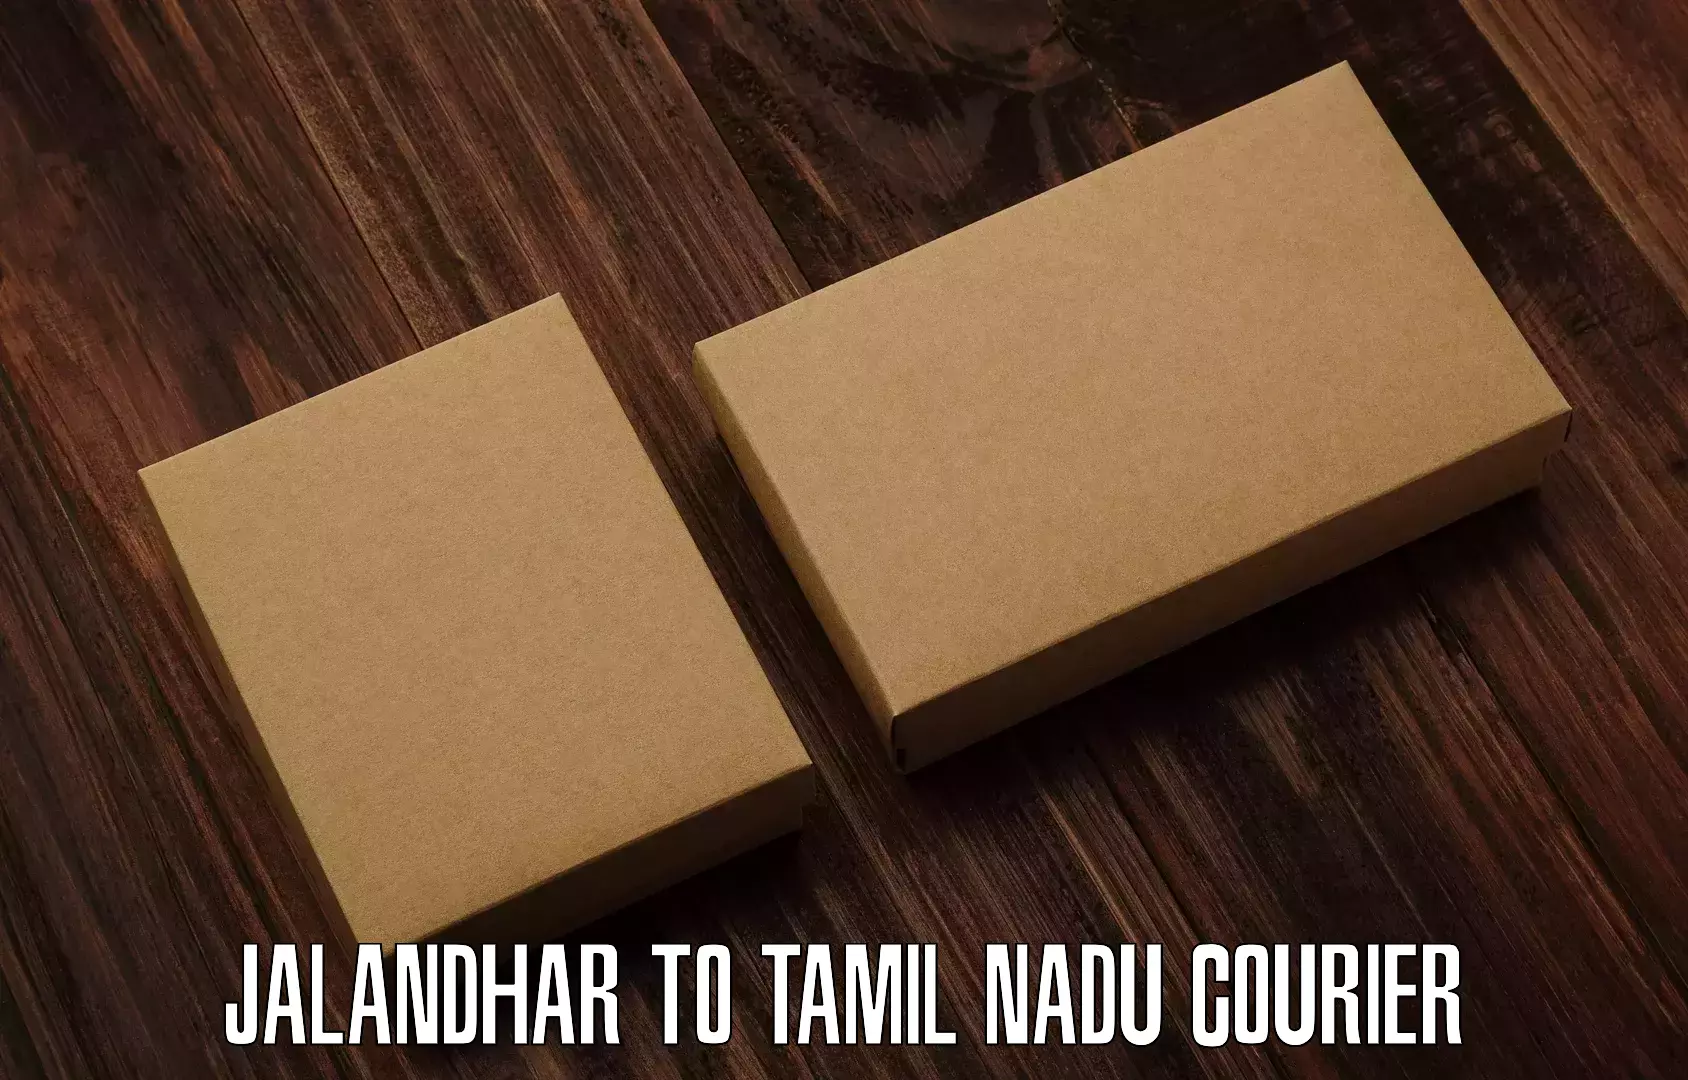 Package delivery network Jalandhar to Nandambakkam